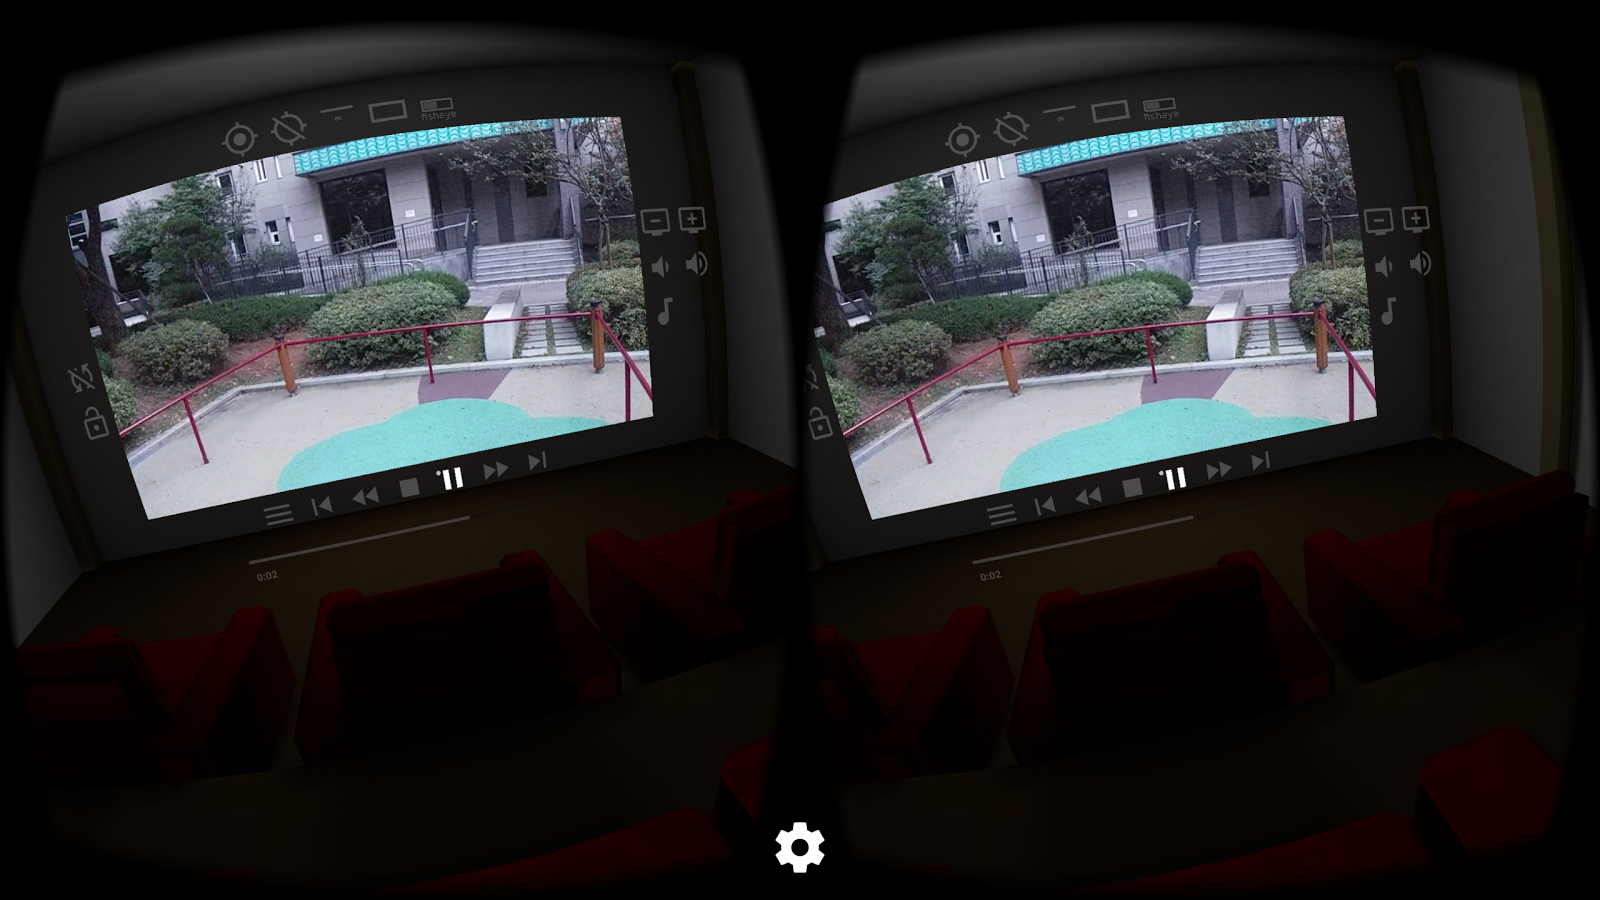 VRTV VR Video Player Free